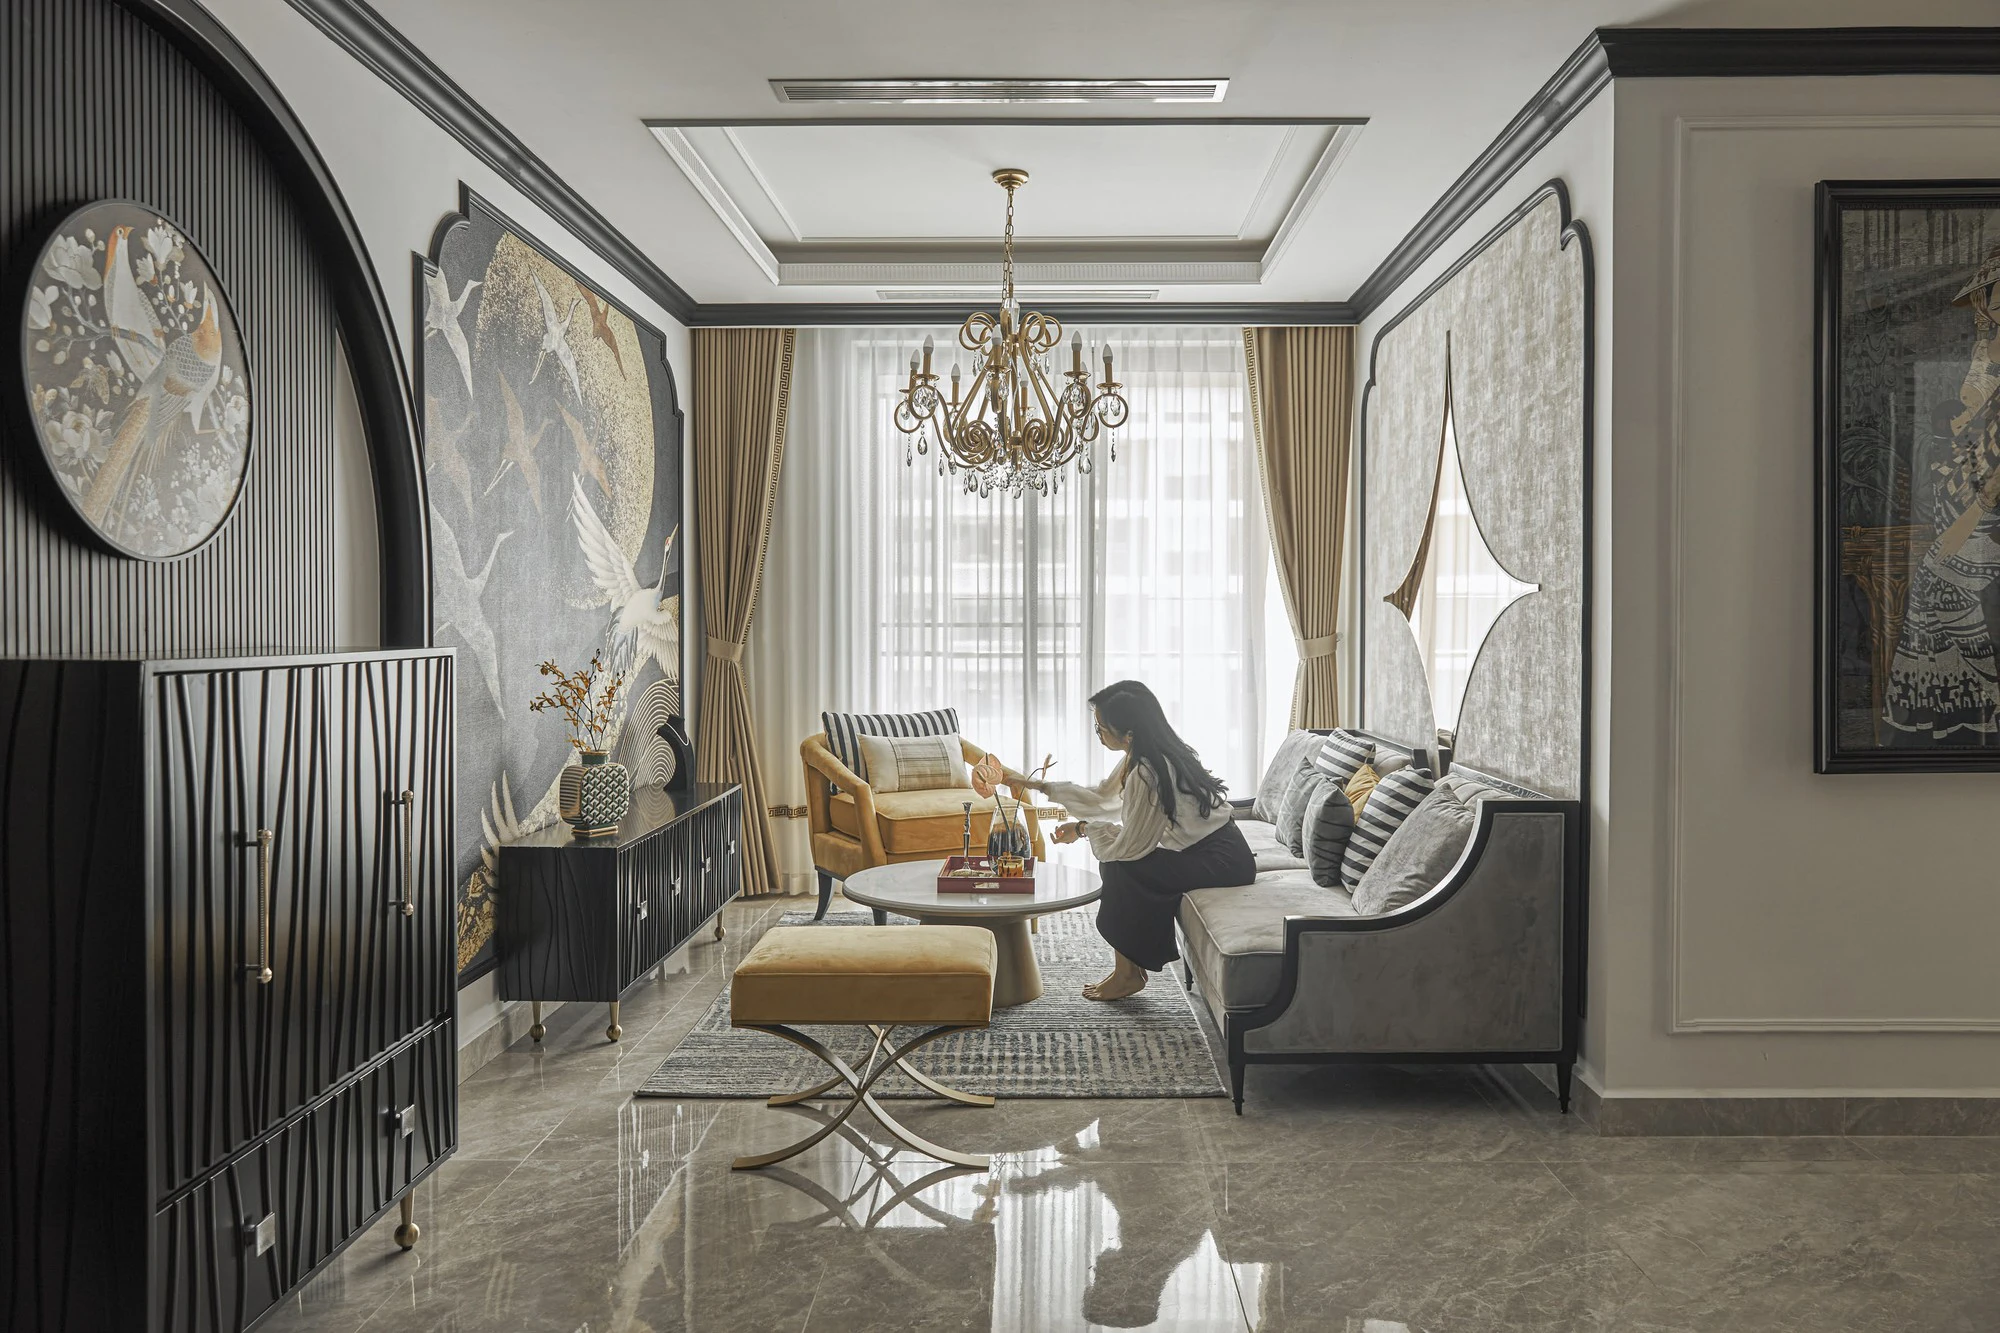 Căn hộ 127m² ở Phú Mỹ Hưng gây ấn tưởng nhờ phong cách châu Âu kết hợp chất liệu nội thất thuần Việt - Ảnh 1.